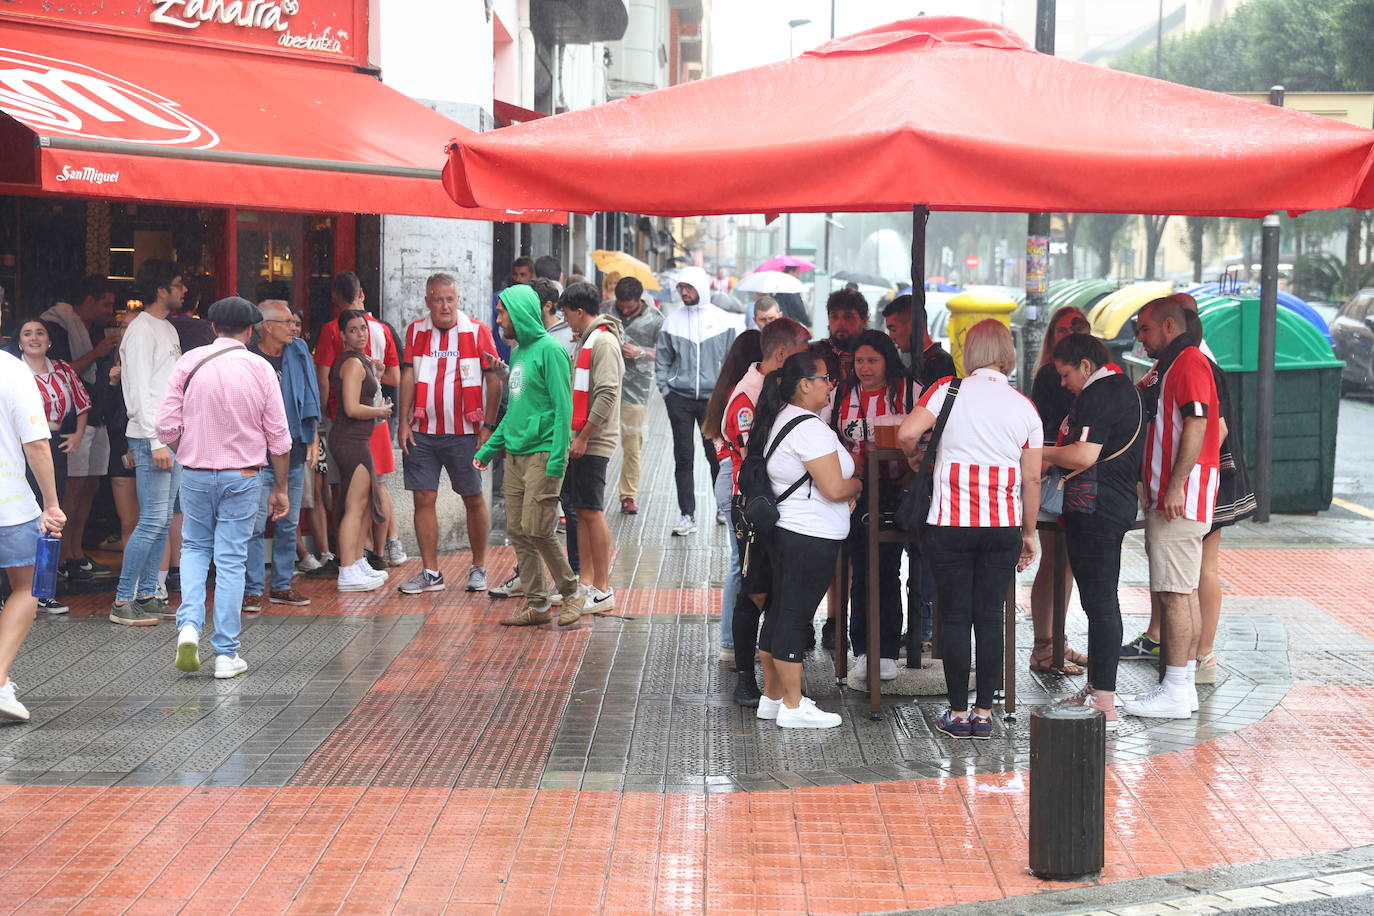 La lluvia enfría el ambiente en Pozas antes del partido contra el Real Madrid